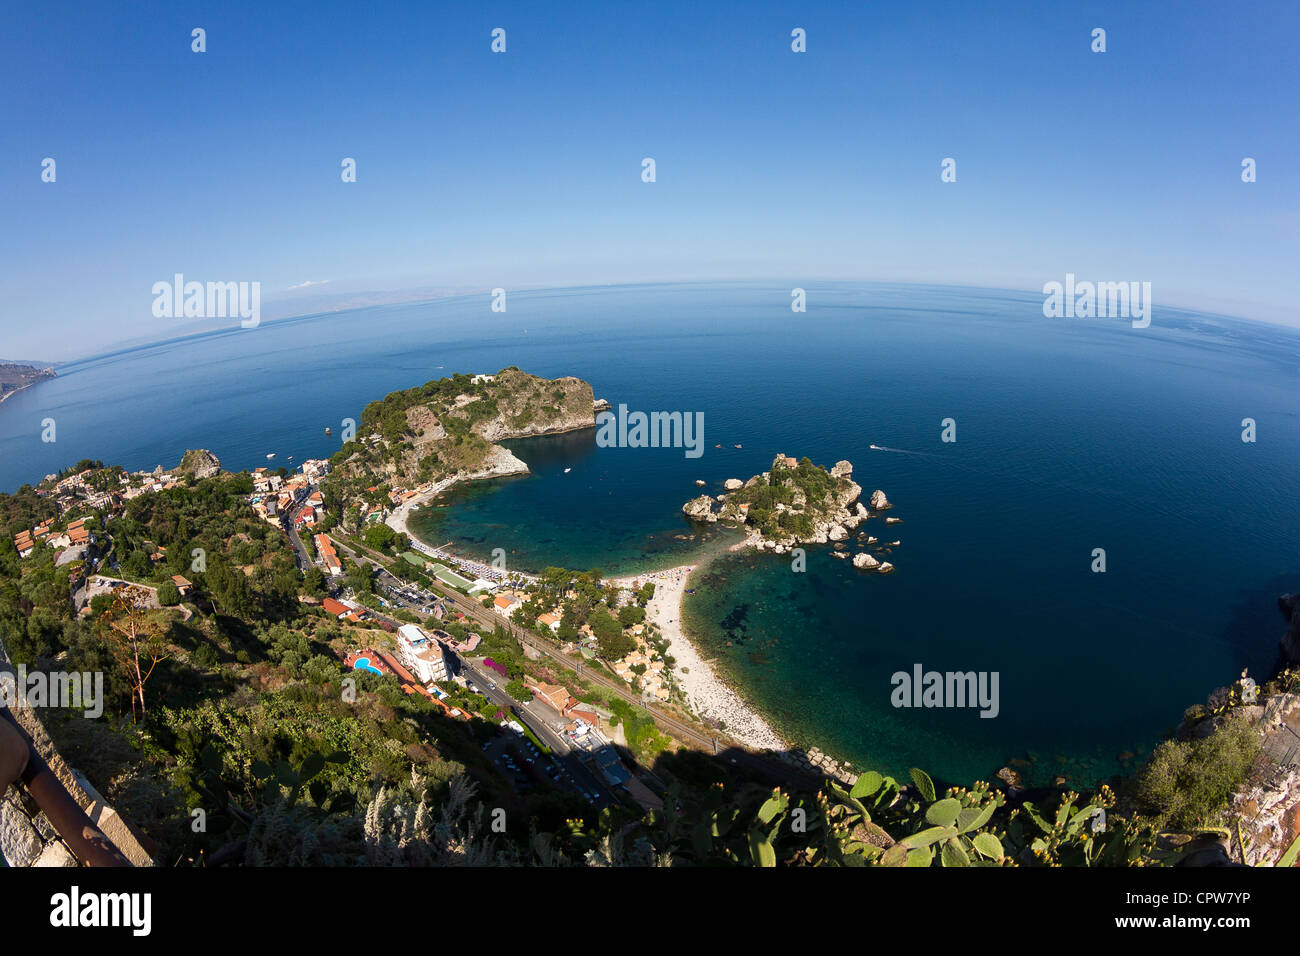 Isola bella, a small island near Taormina, Sicily Stock Photo